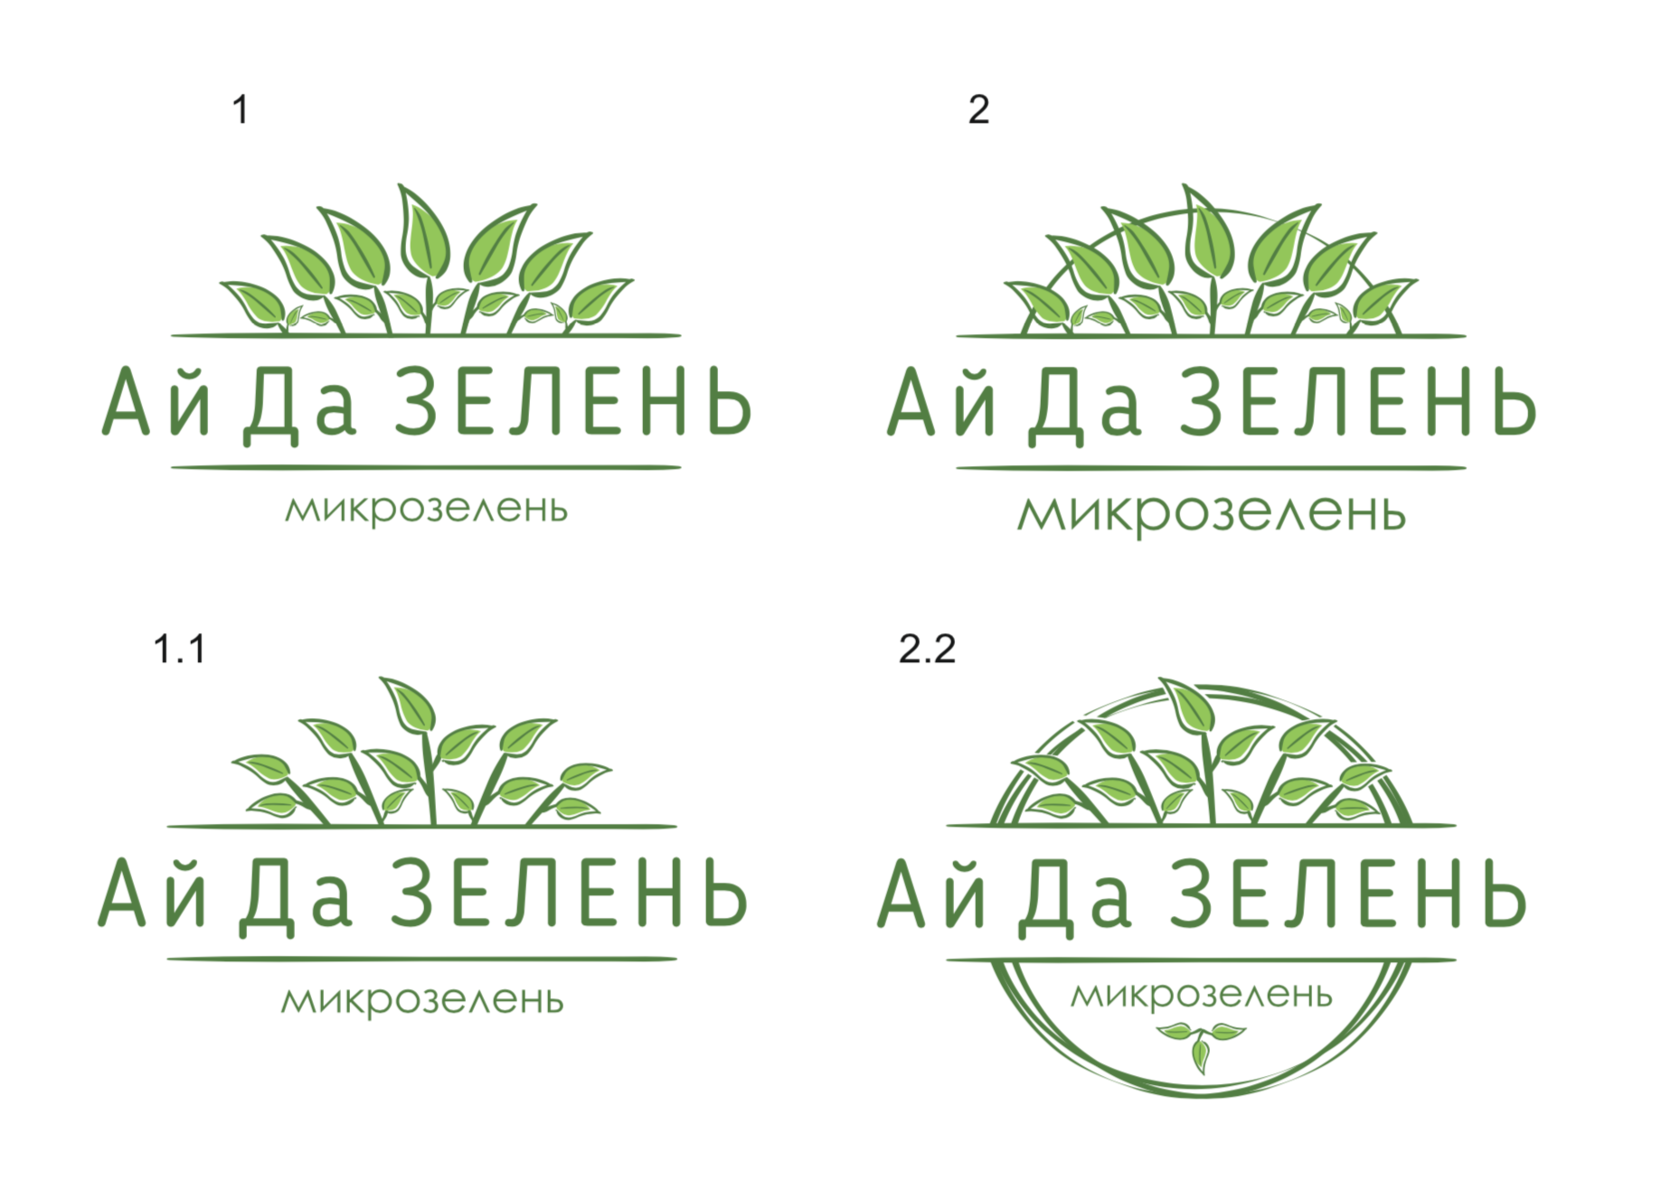 Фирма зелень. Микрозелень логотип. Микрозелень этикетка. Визитка микрозелень. Название фирмы микрозелени.